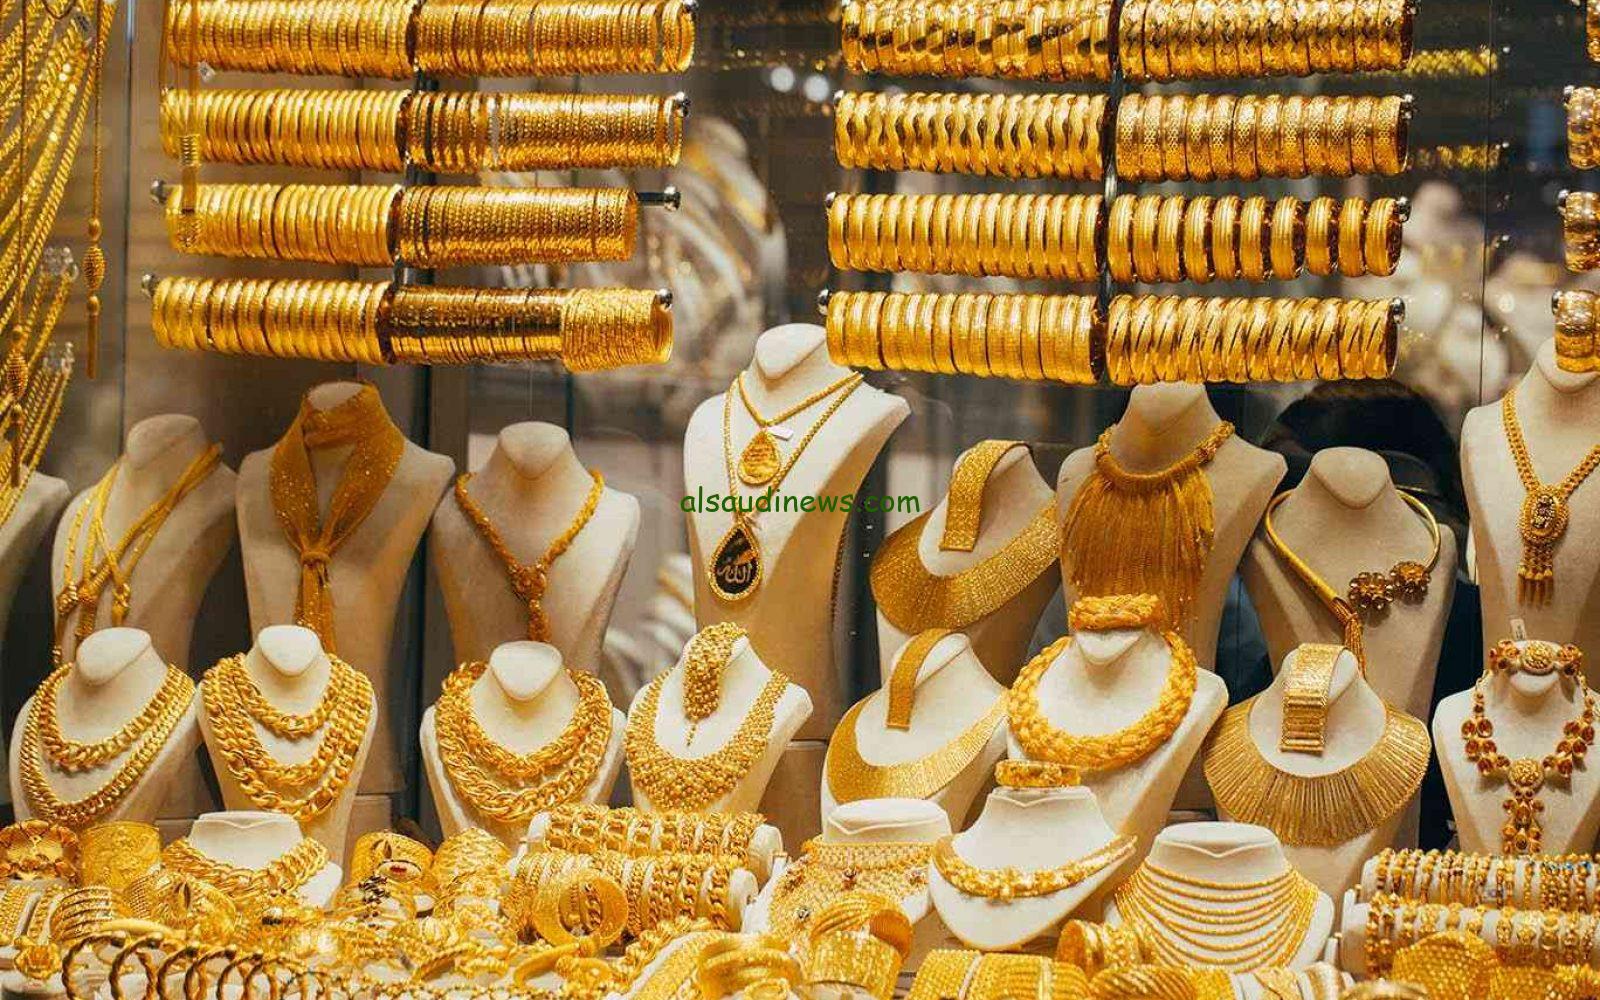 "الأسعار هتتغير" الحكومة تعلن عن أسعار الذهب الفترة المقبلة